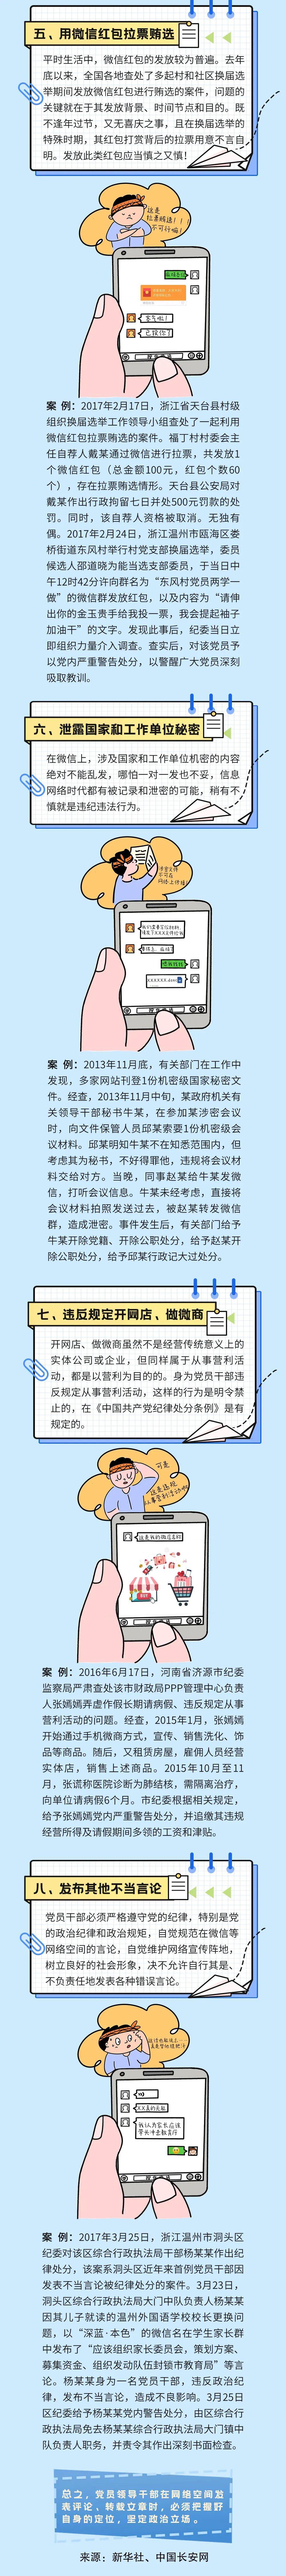 中国共产党党员网络行为规定2.jpg